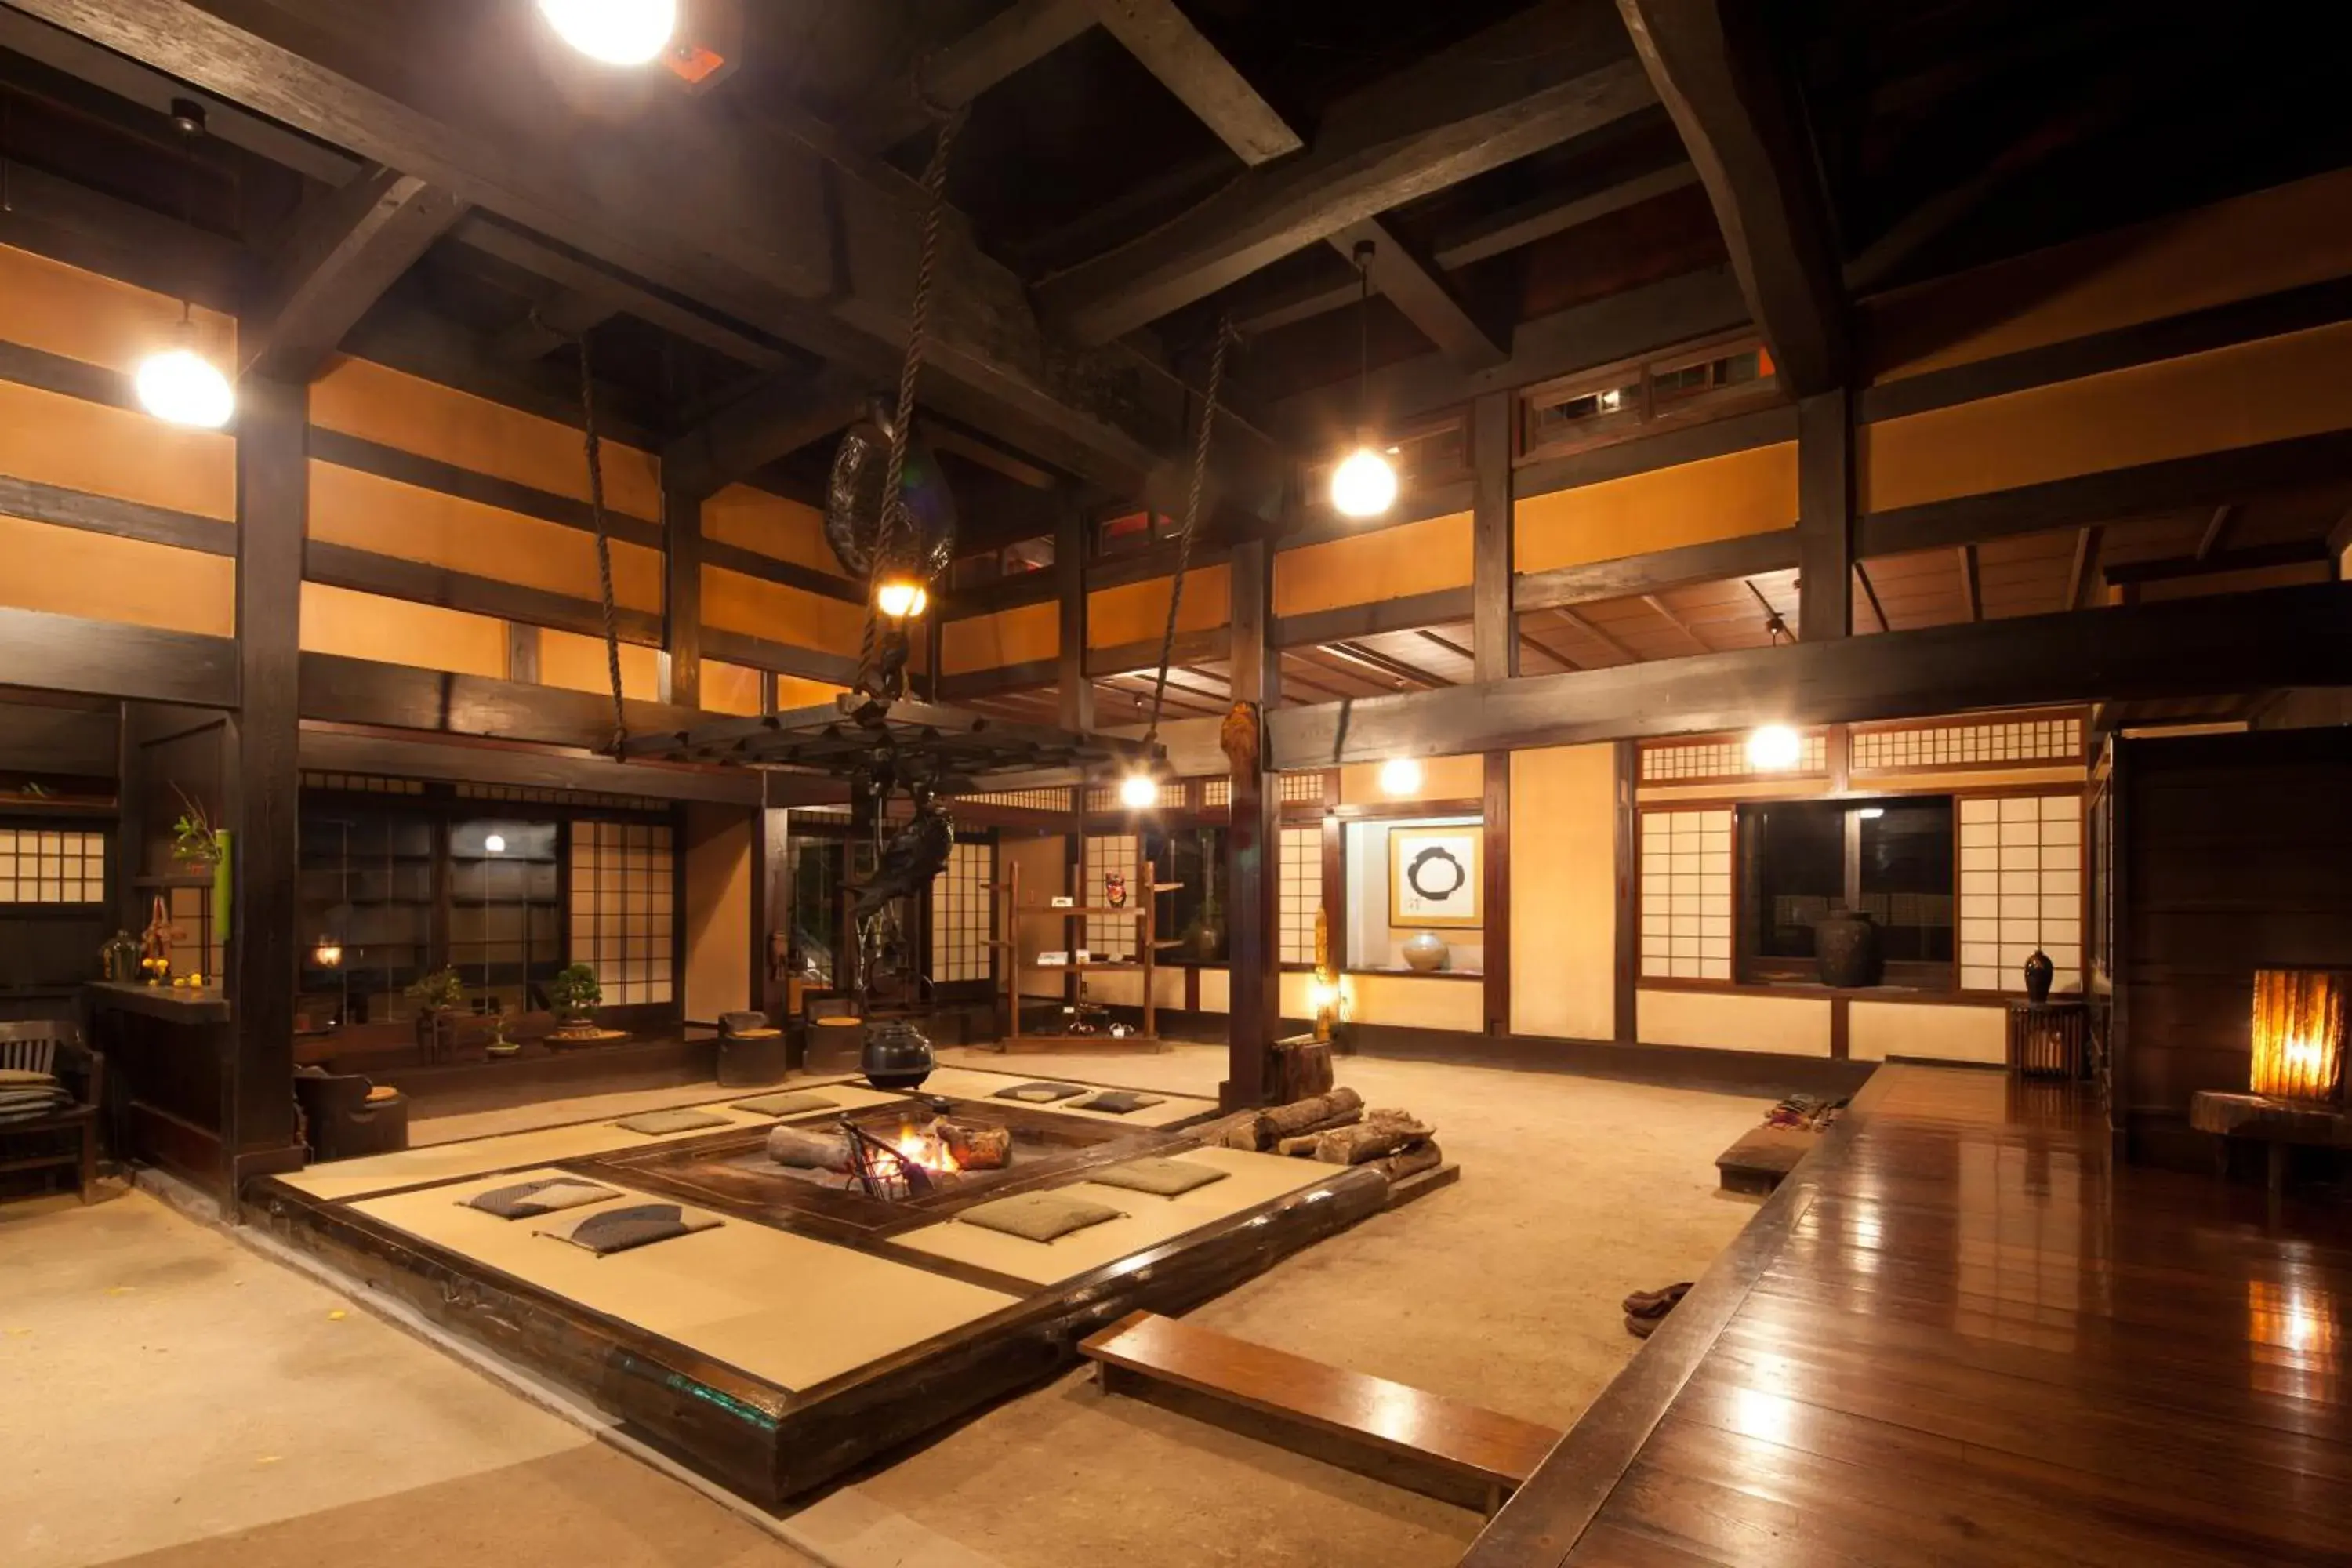 Lobby or reception in Wanosato Ryokan